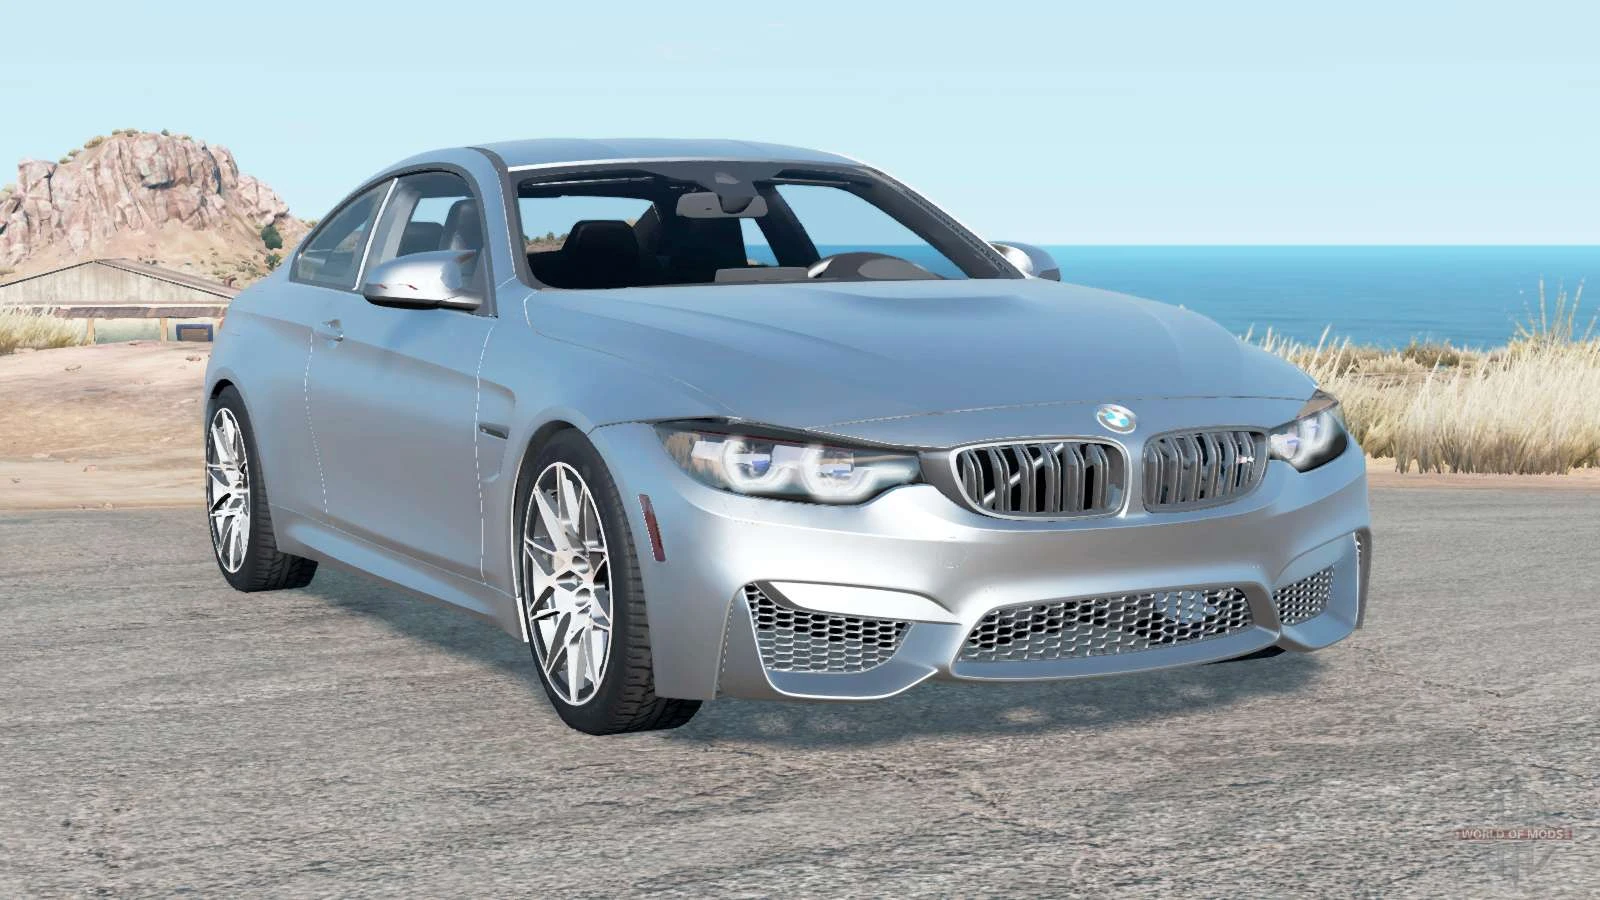 M3 g80 beamng. BMW m4 f82 BEAMNG Drive. BMW m8 BEAMNG Drive. BMW 4-Series (f82) BEAMNG. BMW m3 g80 BEAMNG Drive.